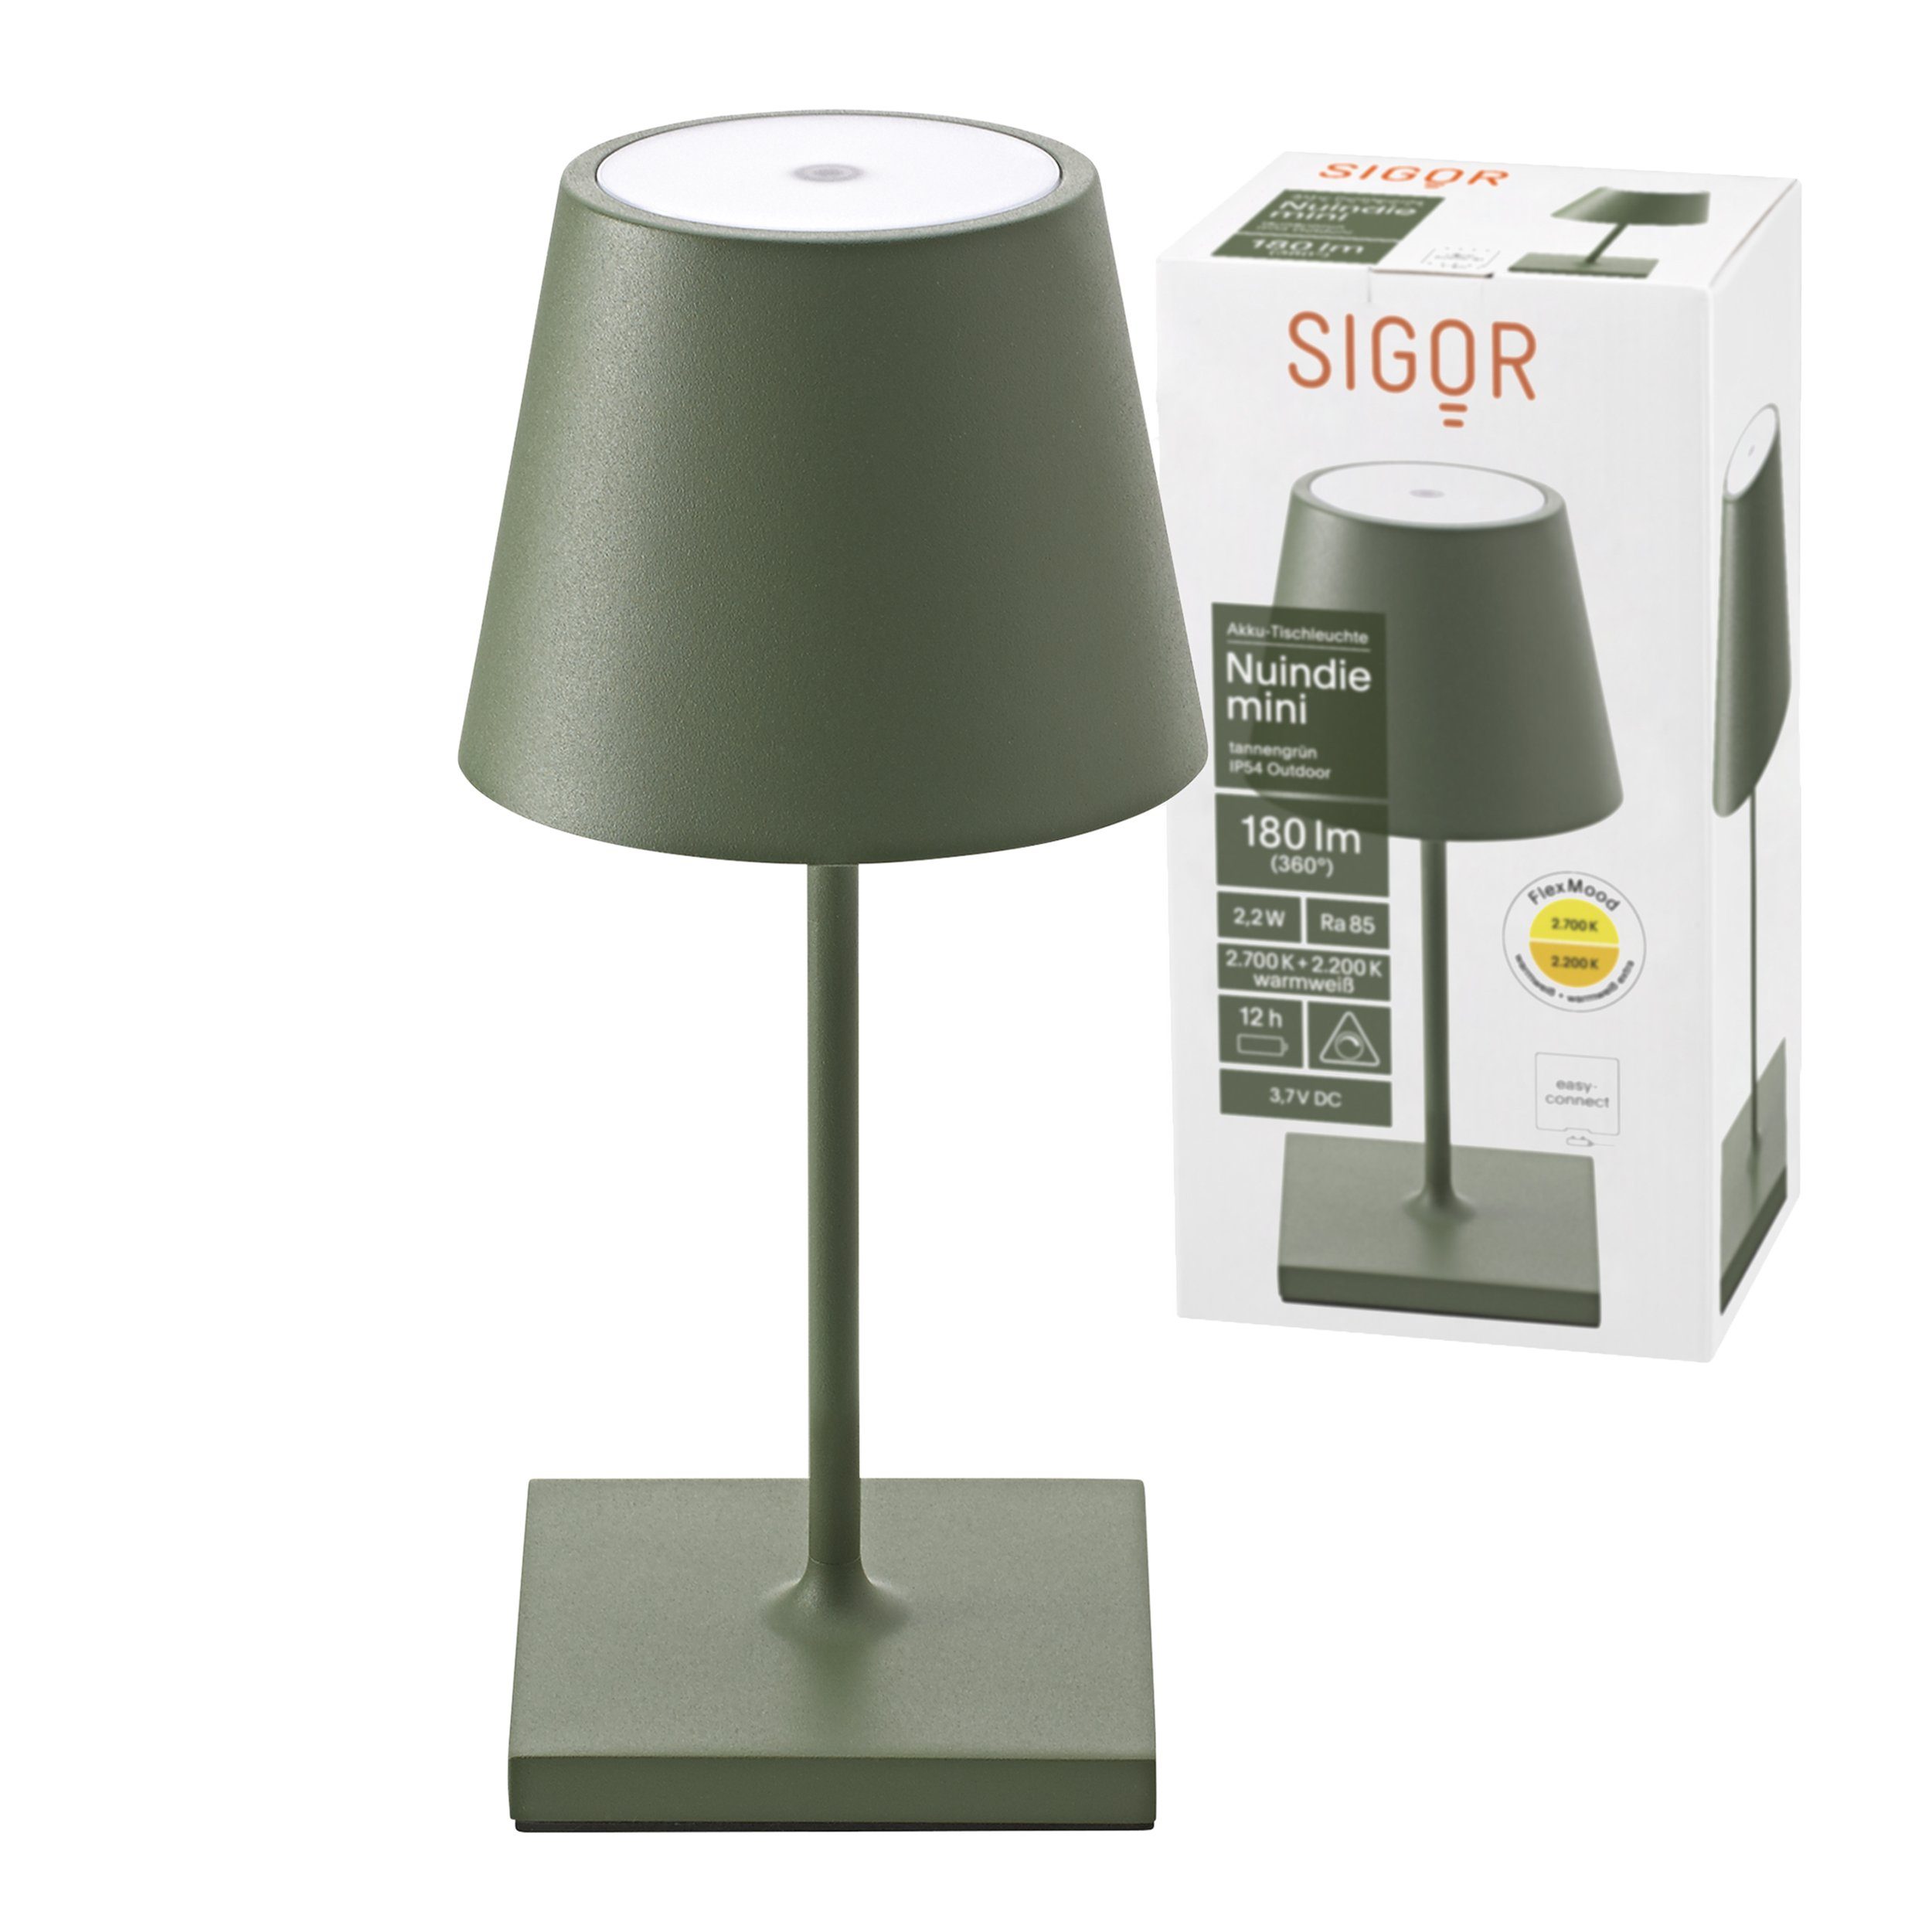 SIGOR LED Tischleuchte Tischleuchte Mini Dimmbar, 2700 LED Tannengrün, Platine, 1 NUINDIE